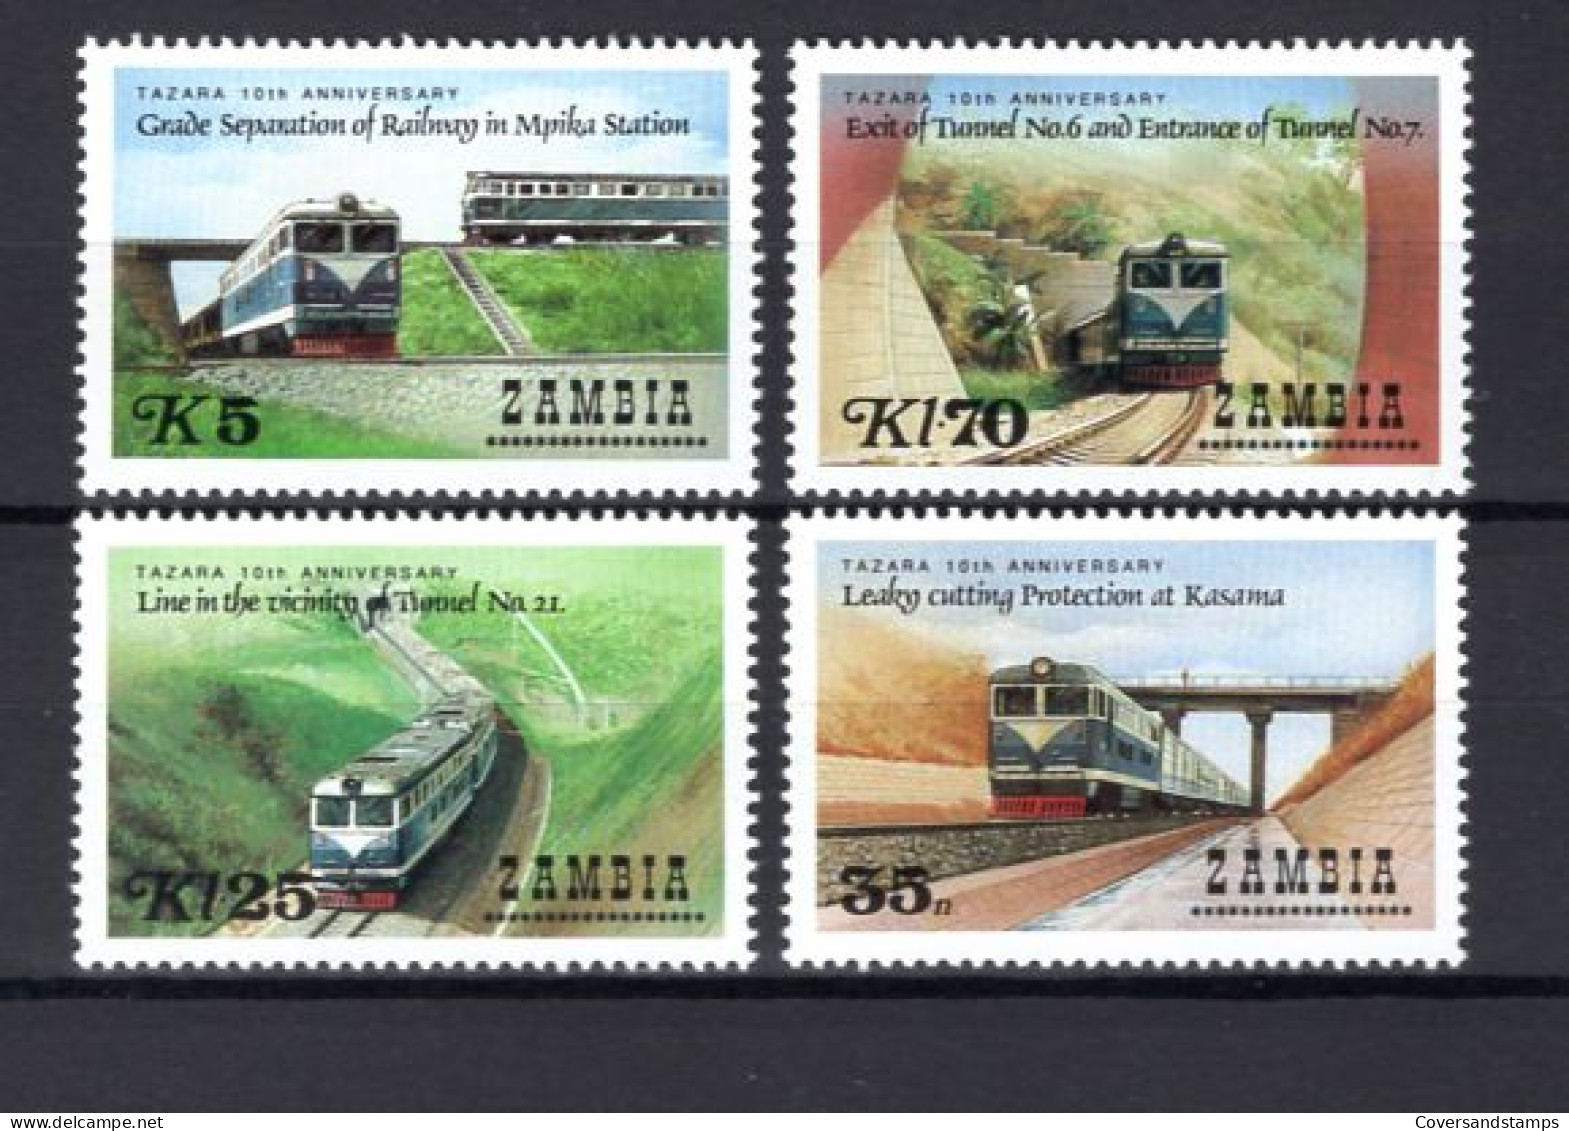  Zambia - Trains - MNH - Trenes